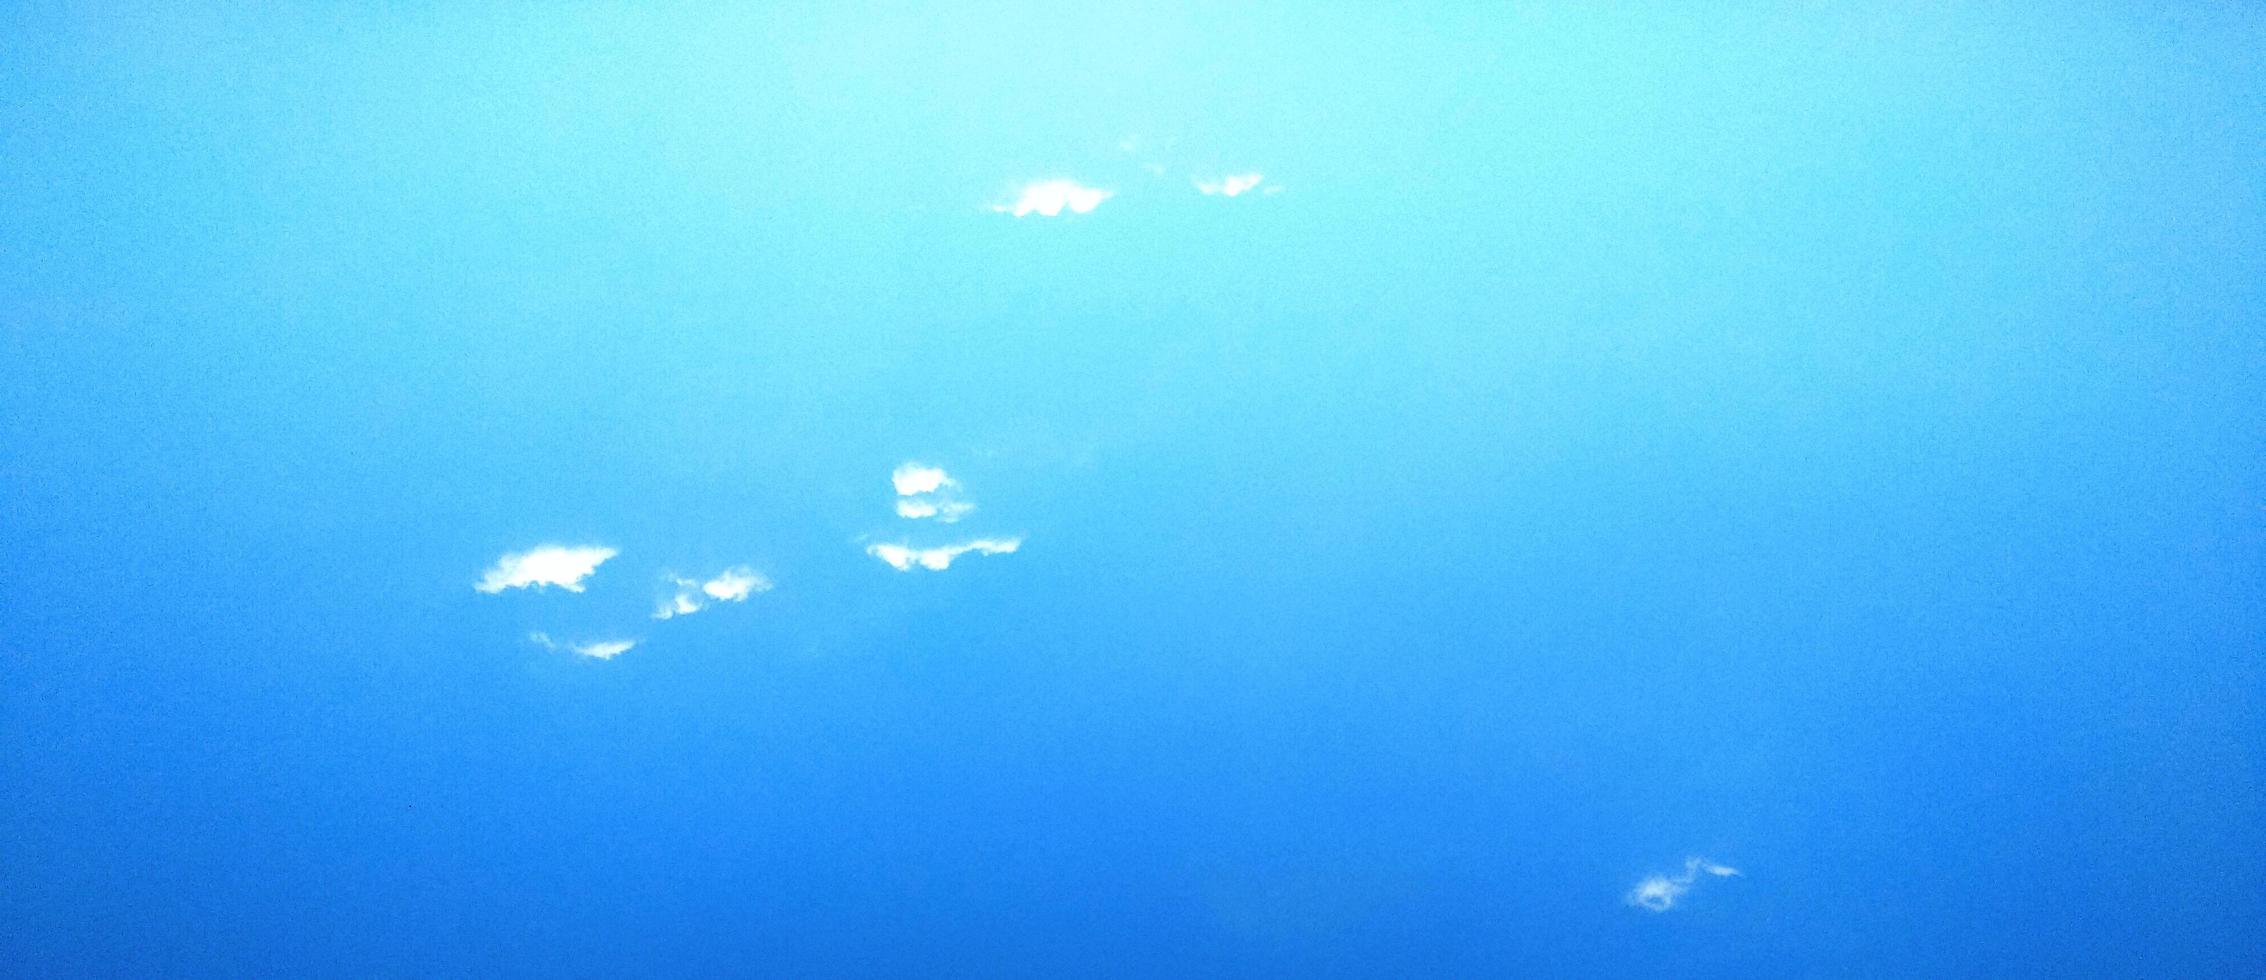 céu azul com fundo de nuvem. textura nublada. foco seletivo. copie o espaço. brincar foto